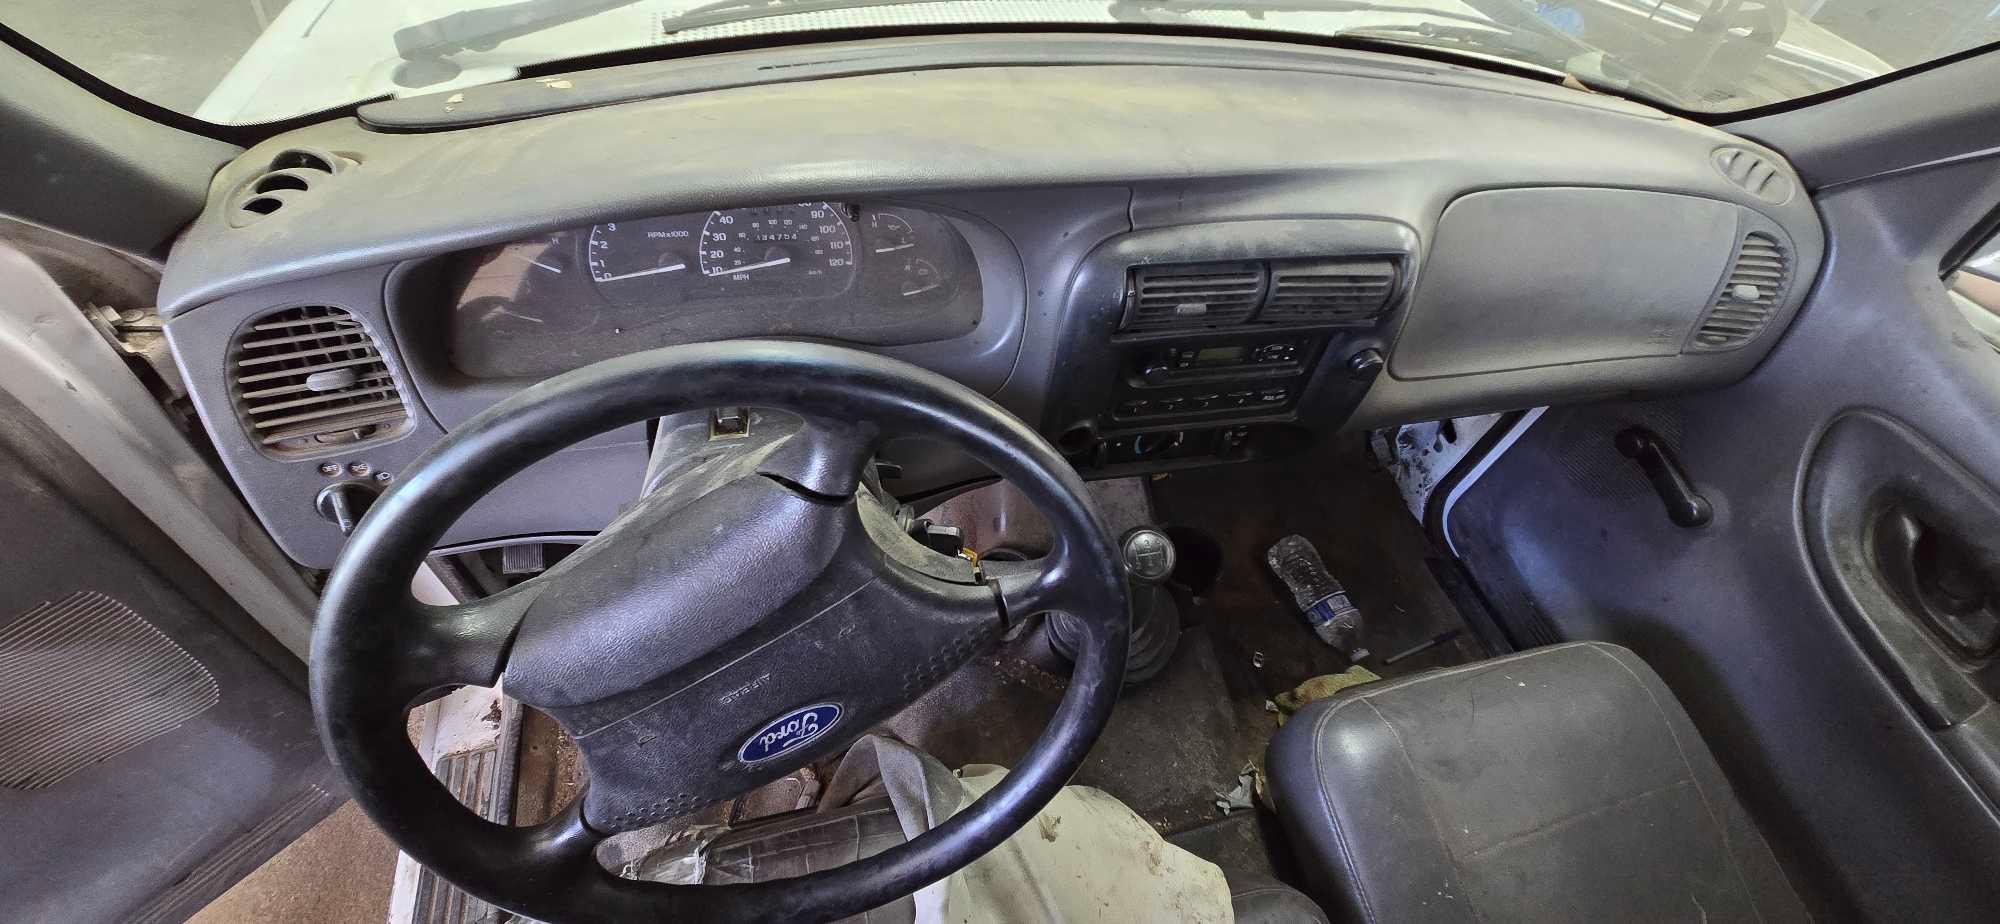 2003 Ford Ranger Pickup Truck * DEALER/EXPORT ONLY*